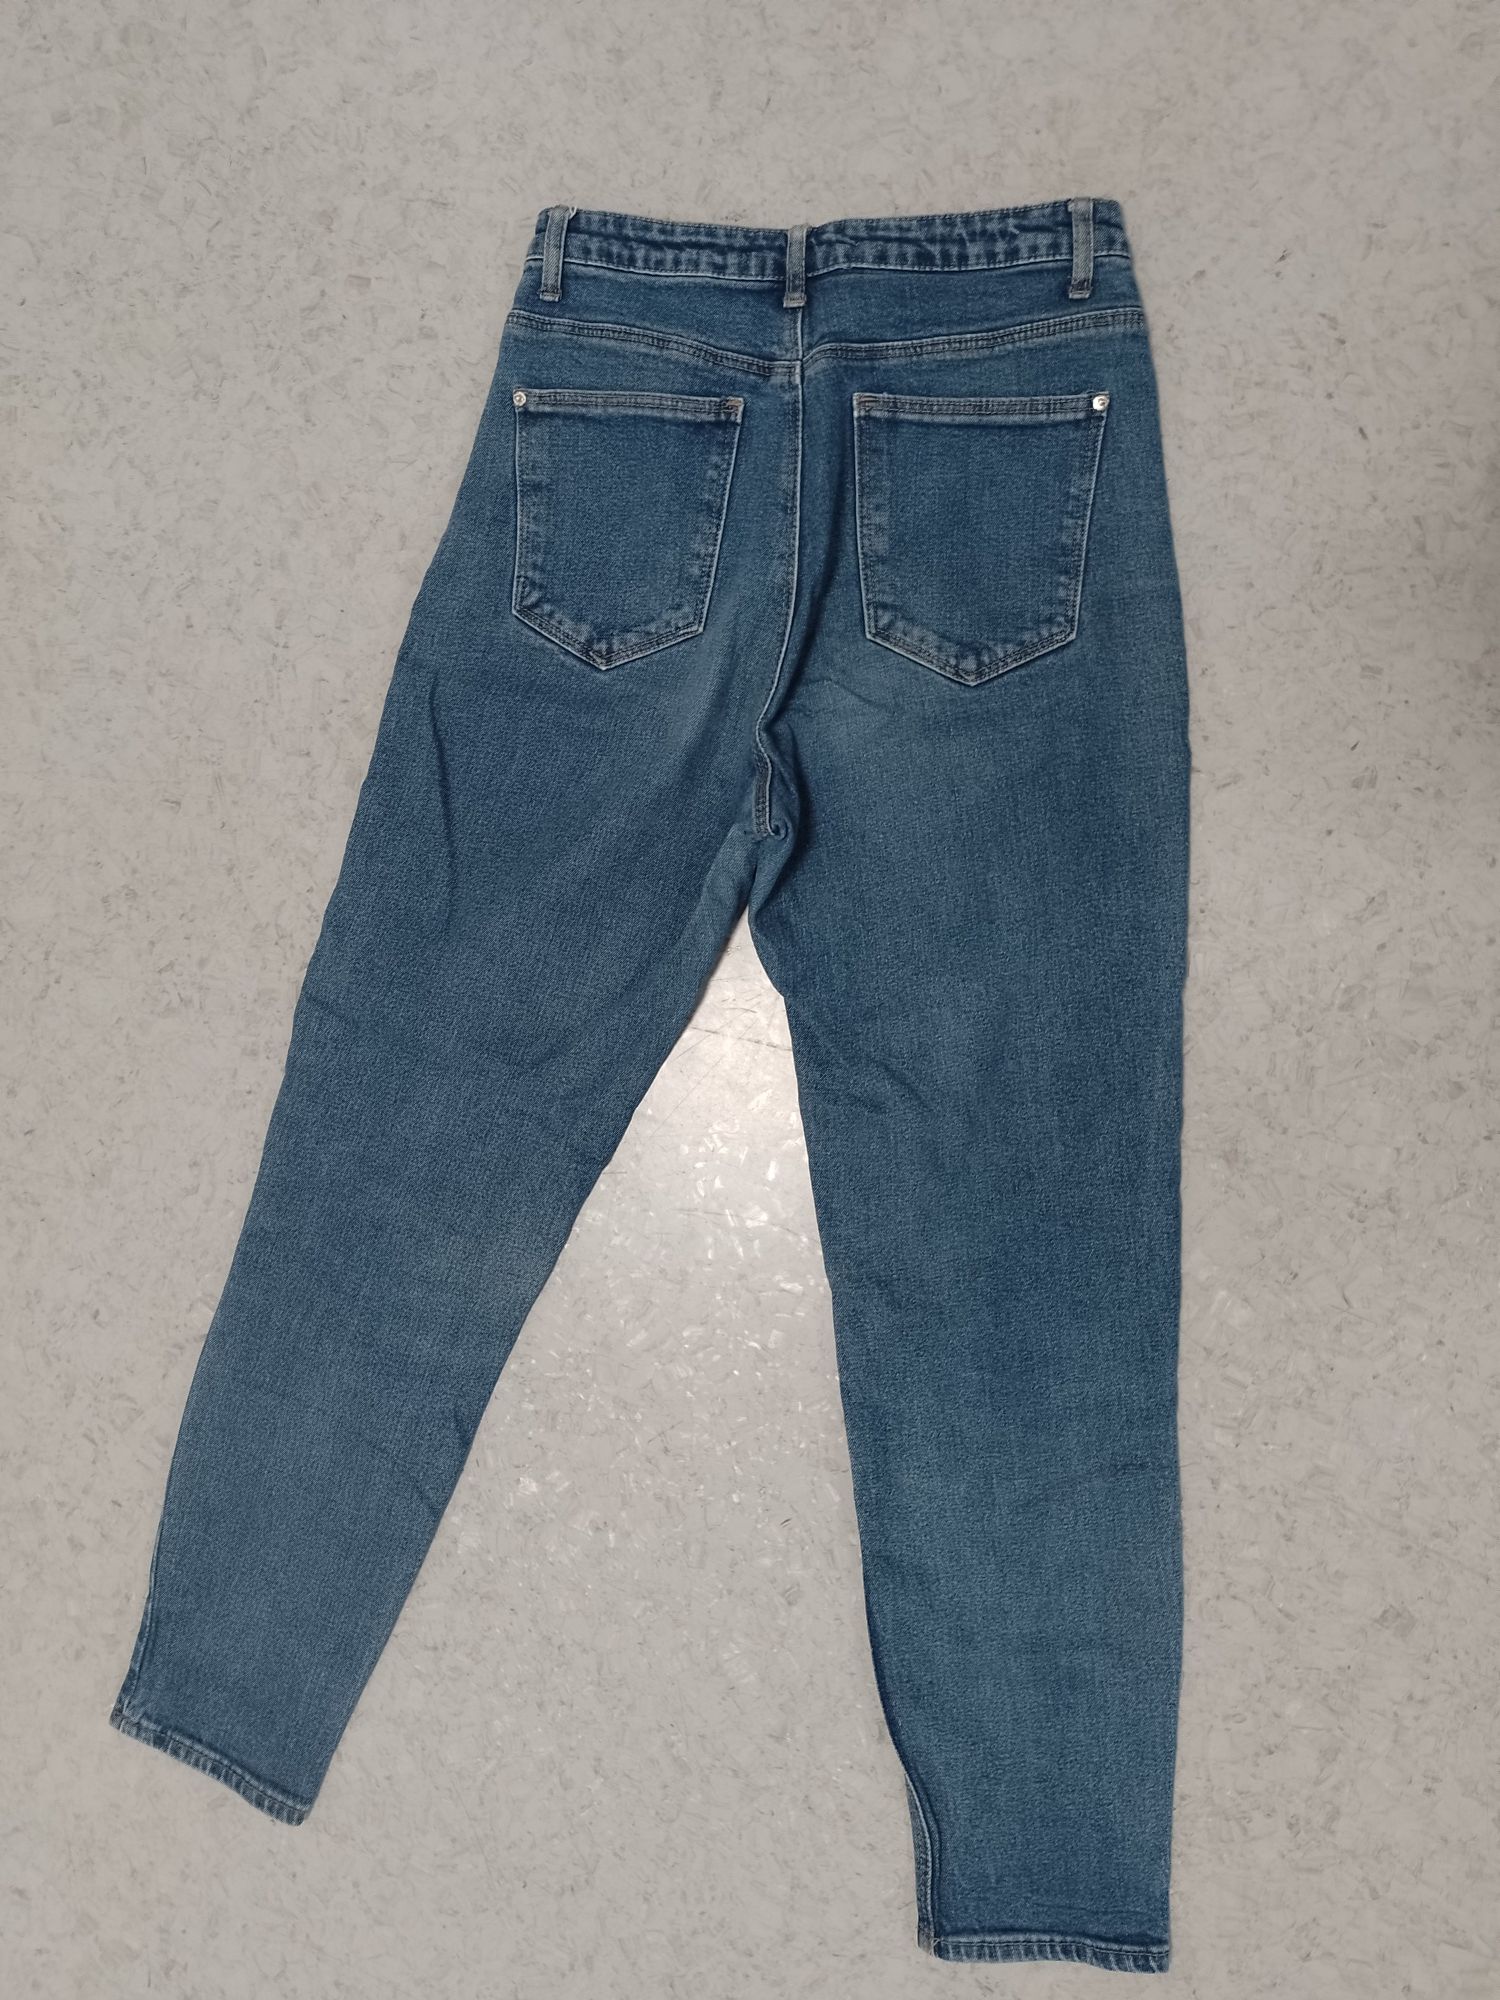 Sprzedam damskie spodnie jeansowe firmy Sinsay rozmiar 38.